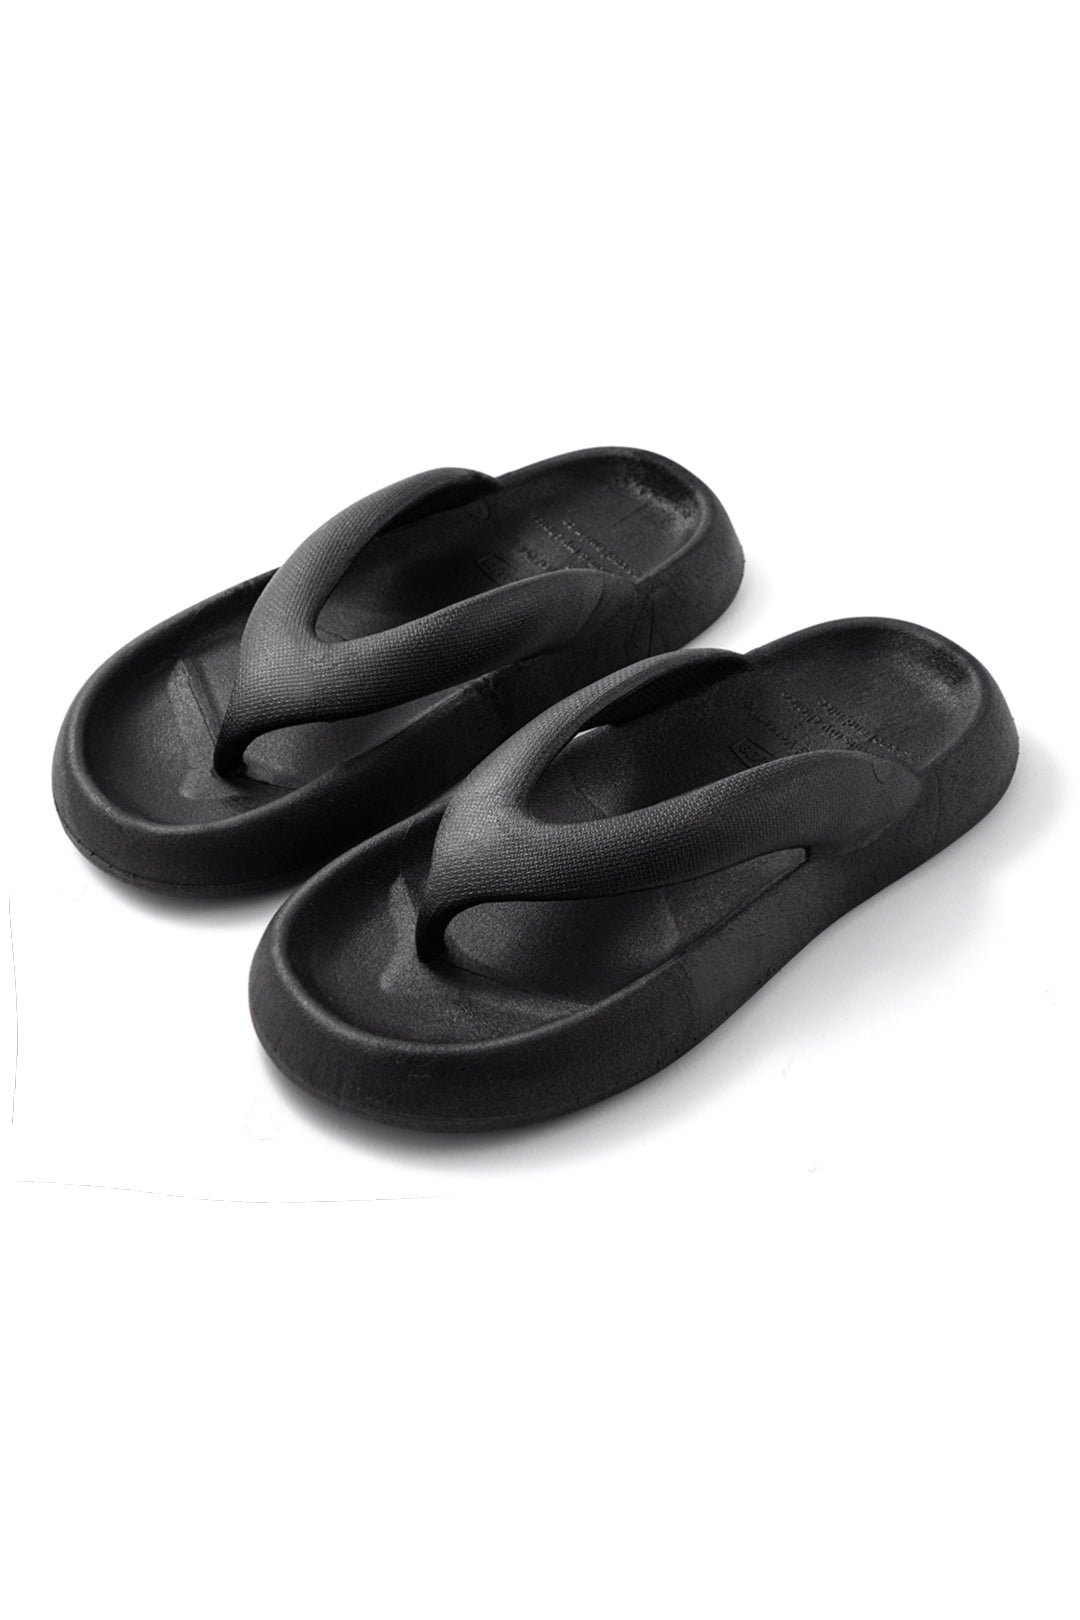 Classic Black Comfort Flip-Flops